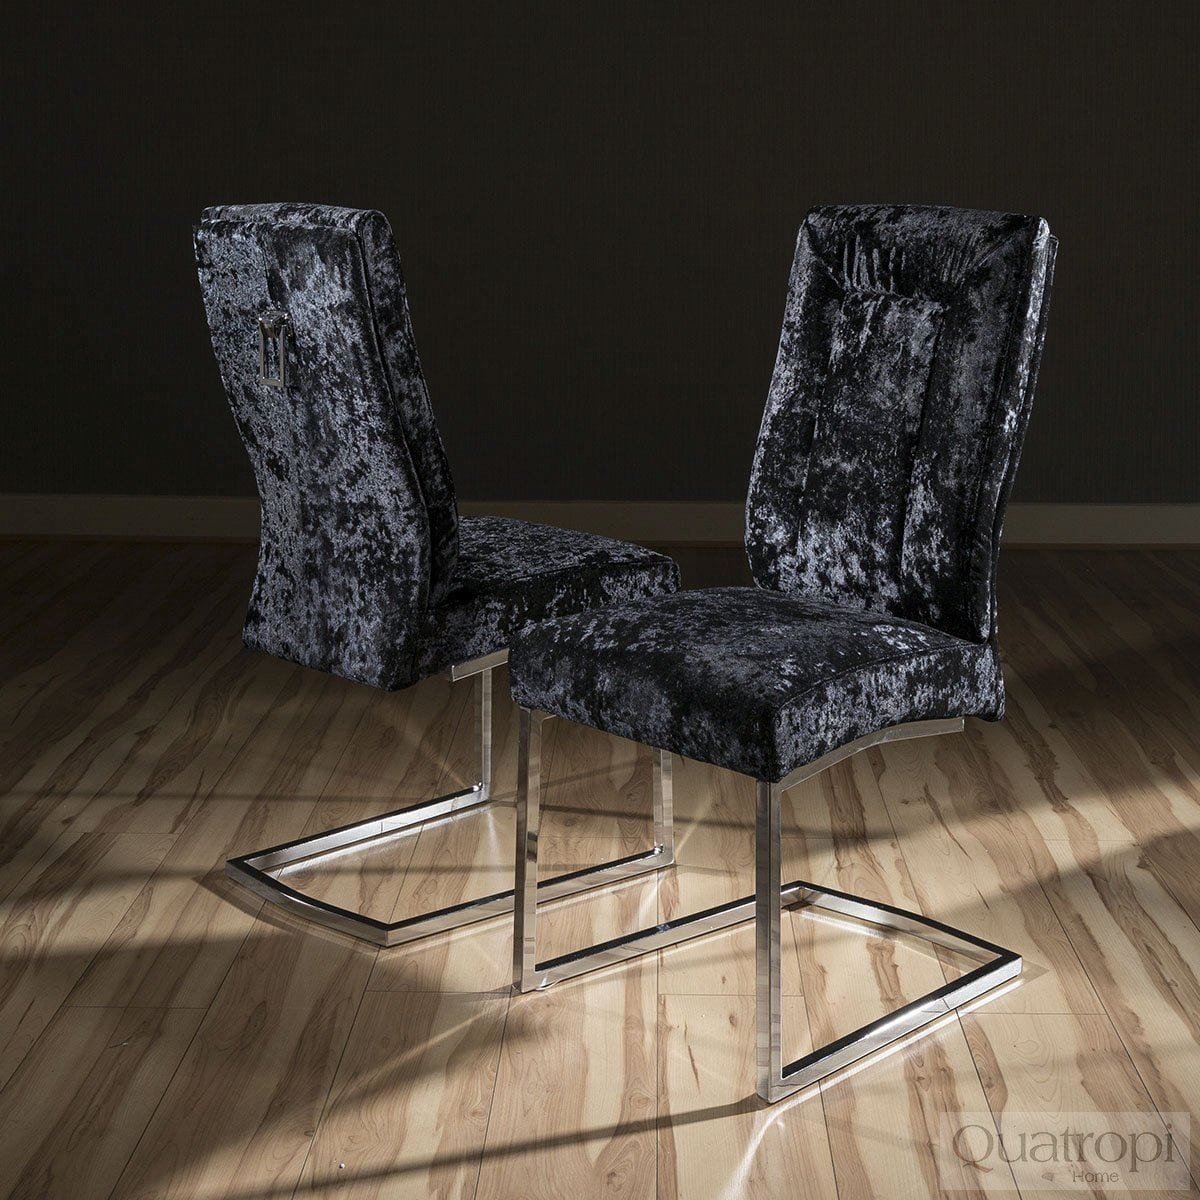 Quatropi Set of 2 Large Super Comfy Modern Dining Chairs Black crushed velvet